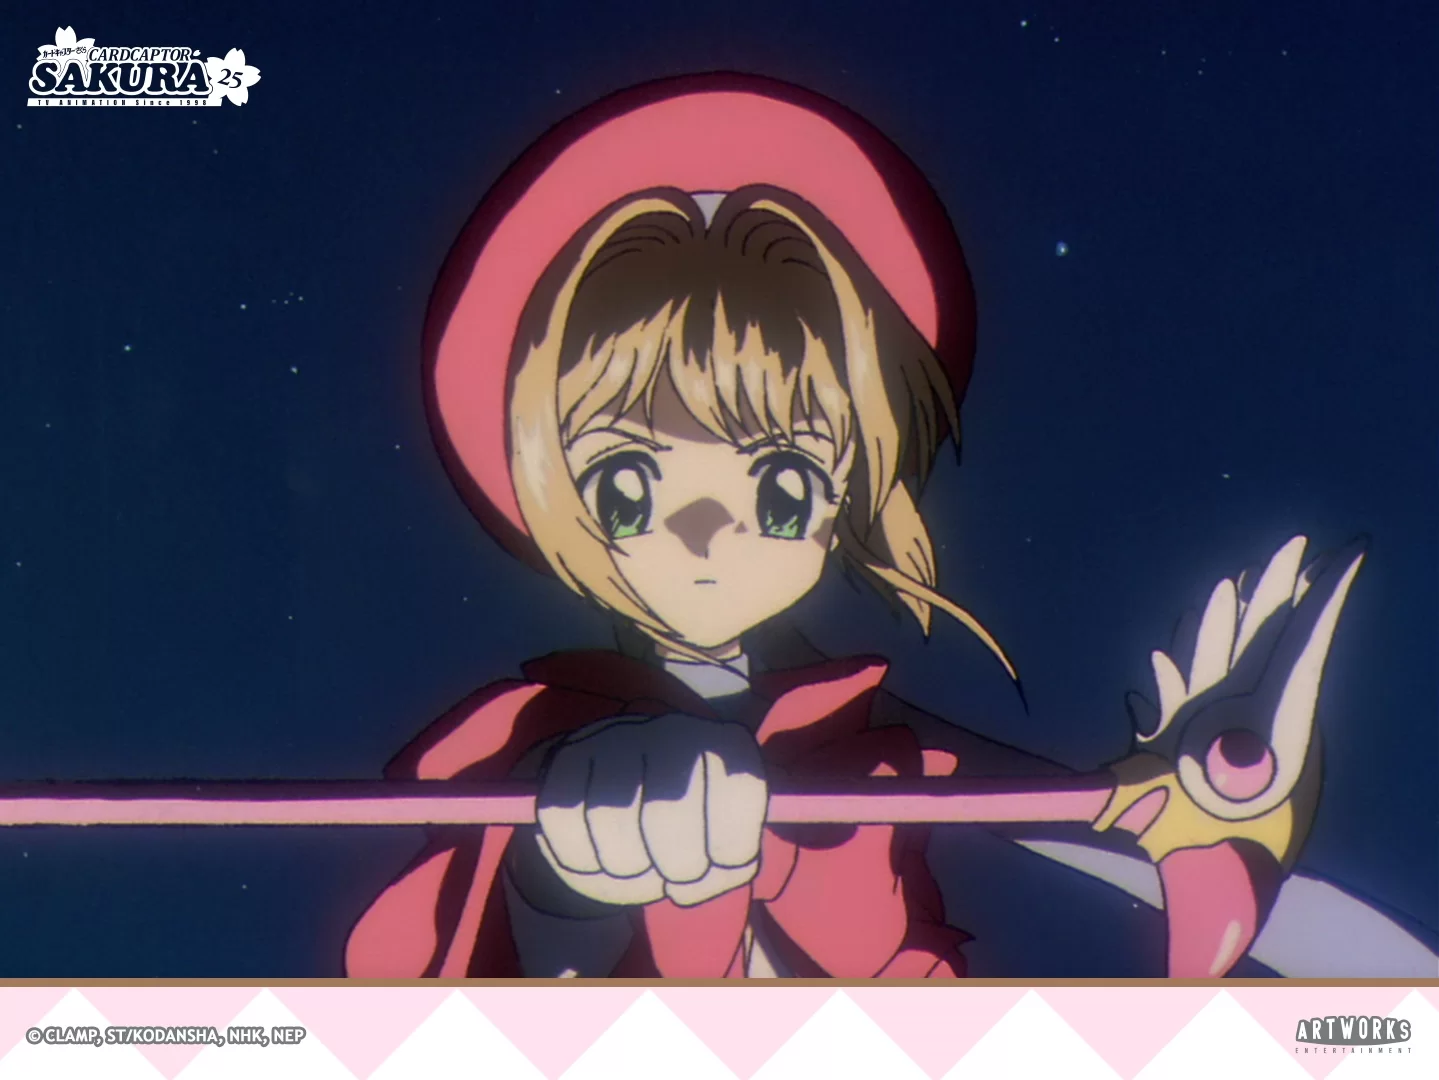 Anime no Shoujo - A velhice chegou! Iniciada a comemoração dos 25 anos do  primeiro anime de Sakura Card Captors. Essa nova ilustração comemorativa  foi lançada! A franquia fez parte da infância